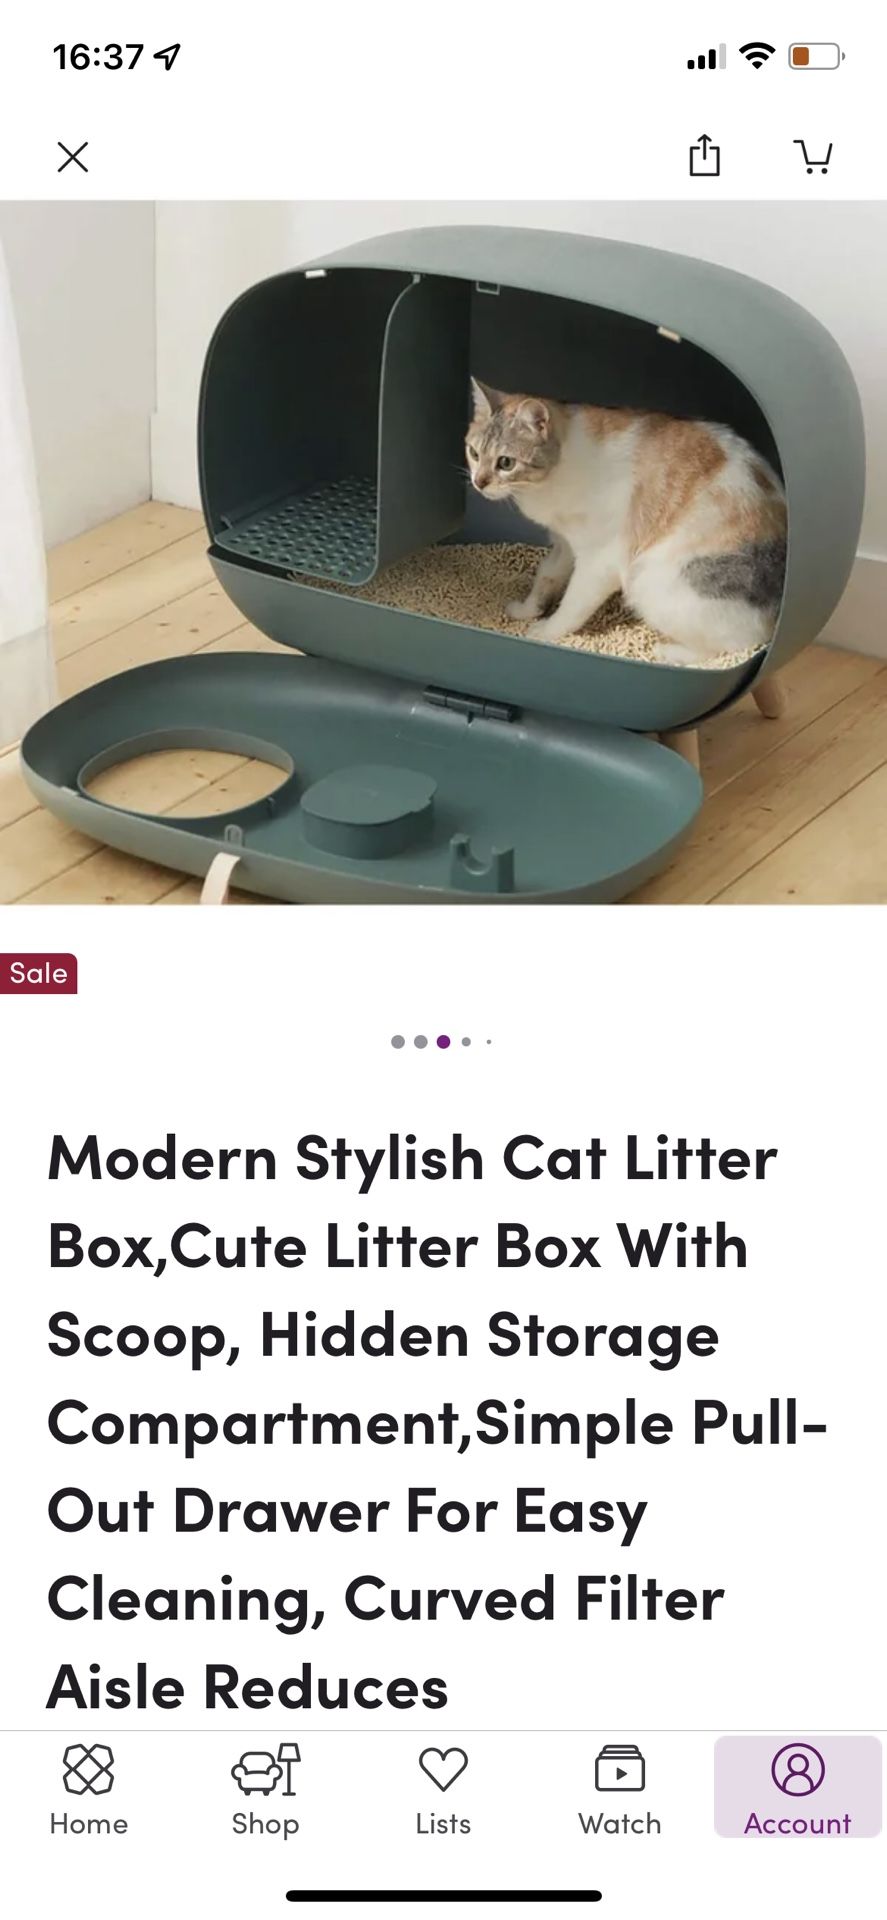 Stylish, Modern Litter Box 